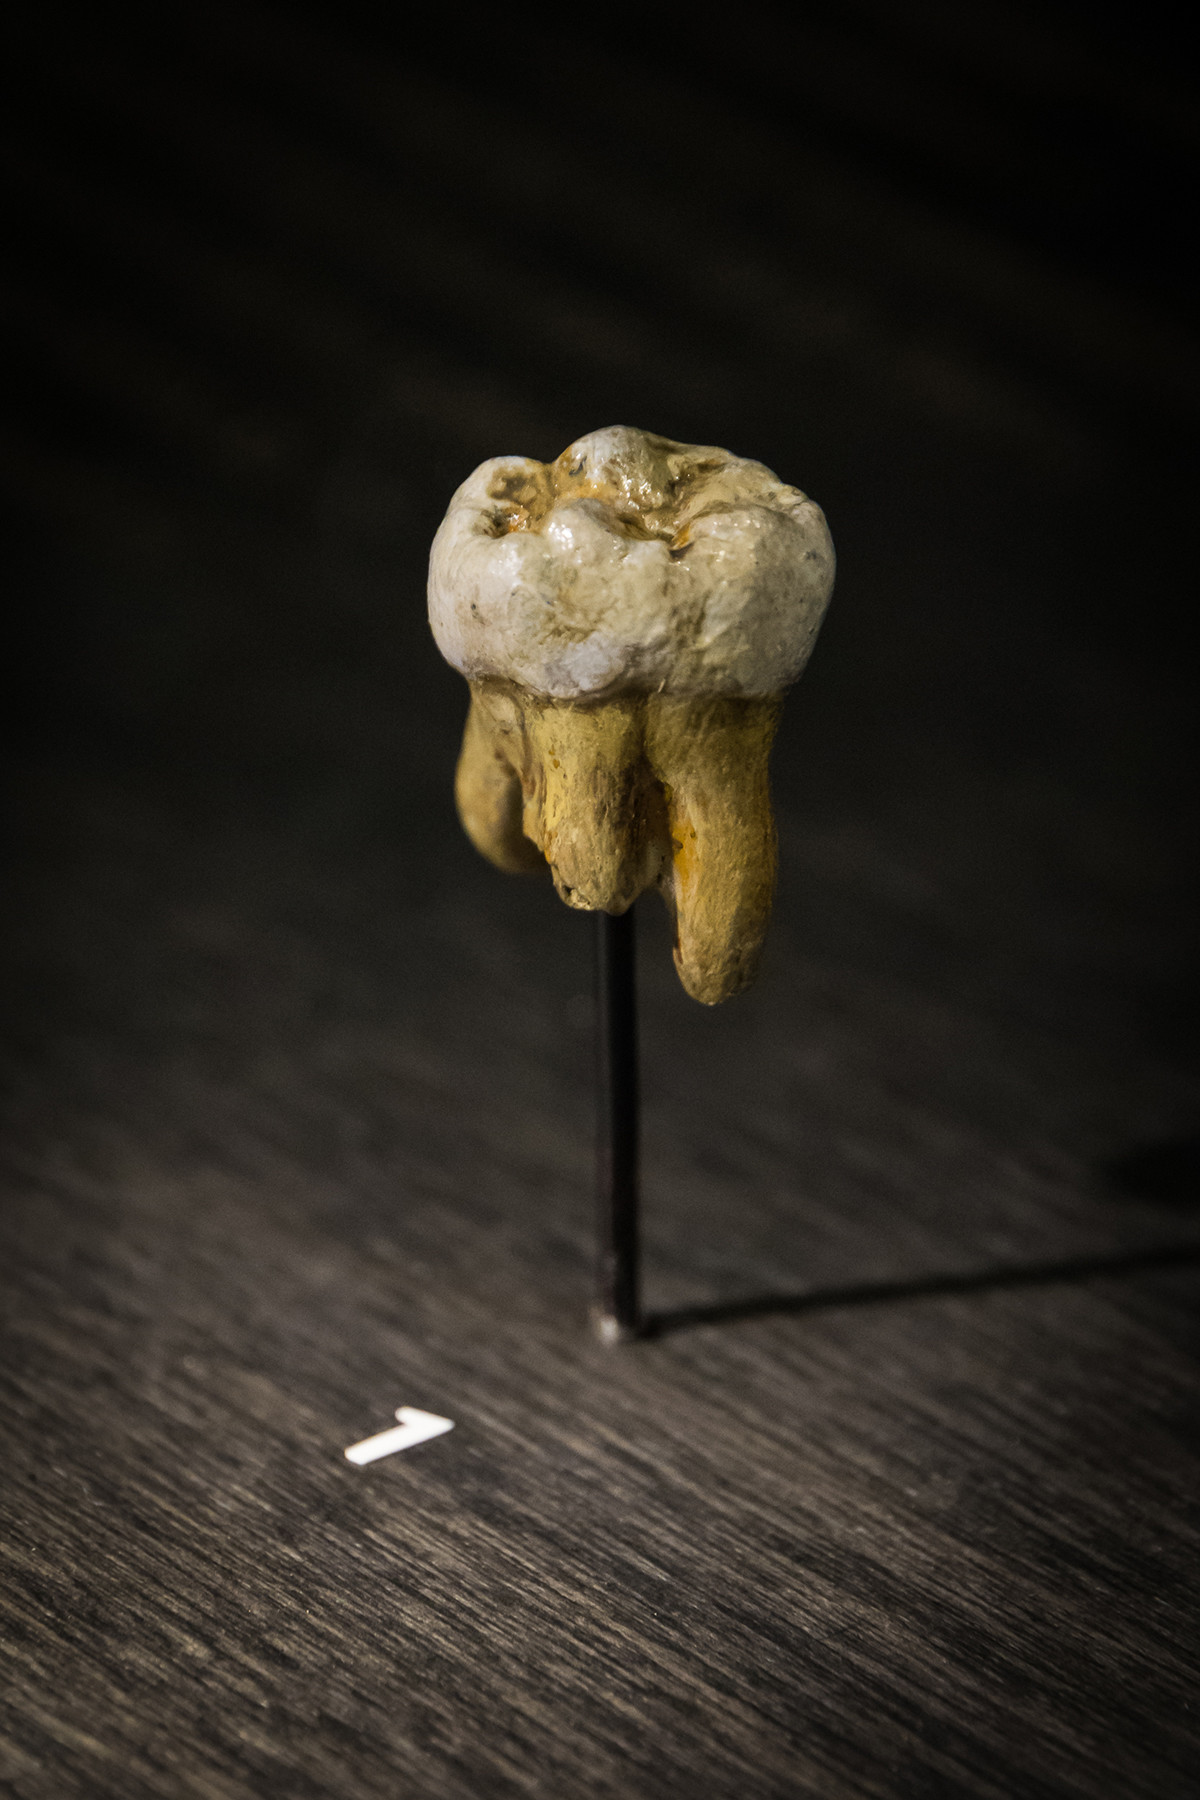 El diente molar encontrado en 2000
